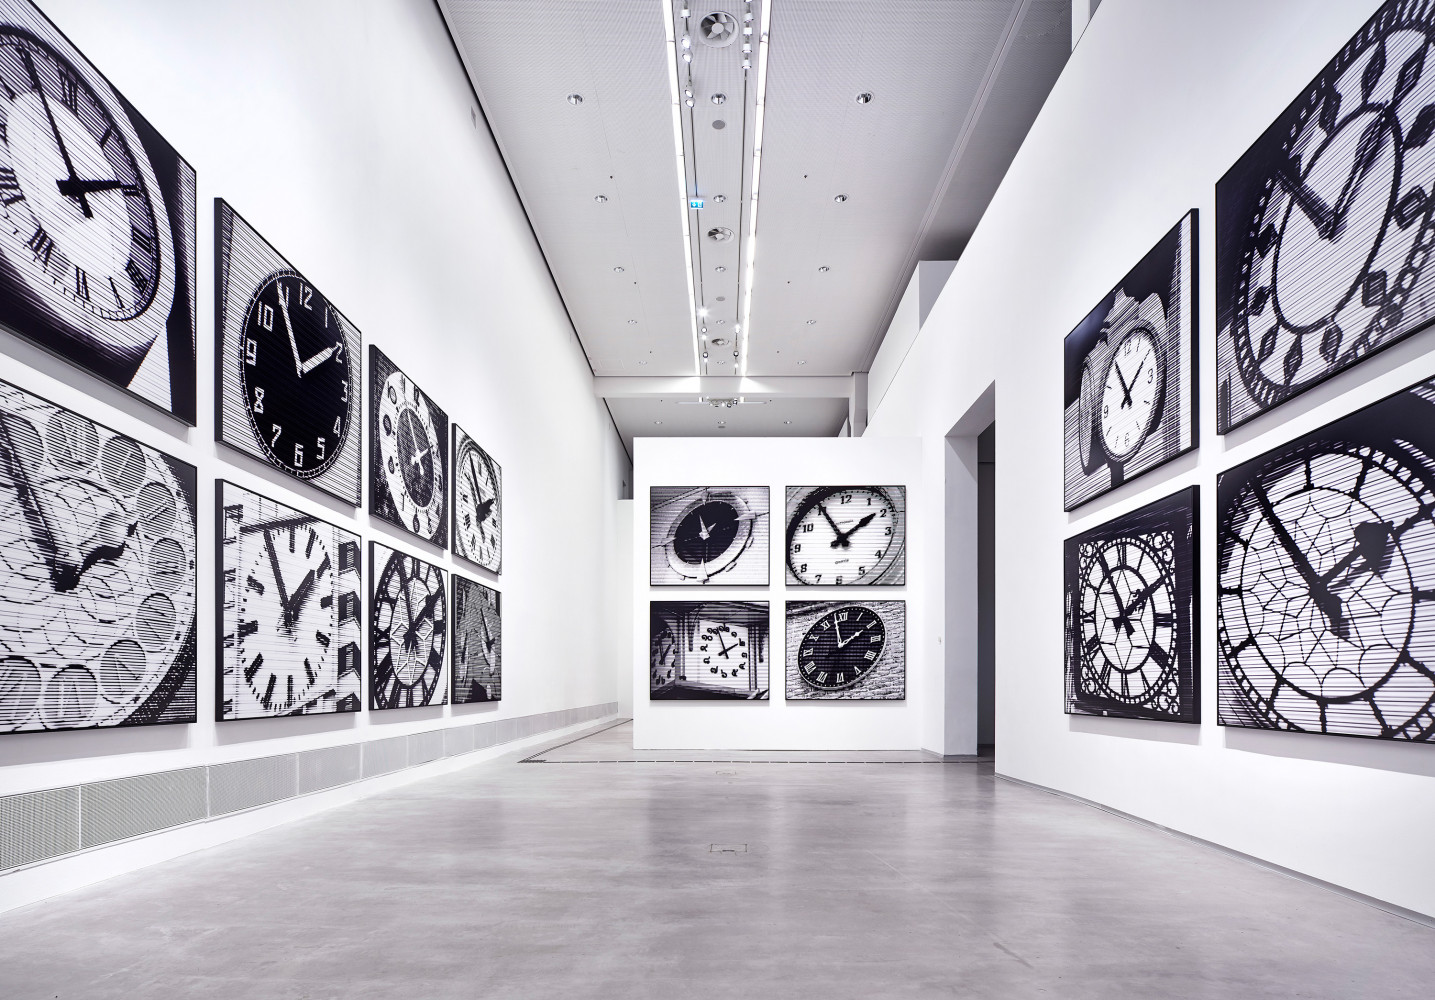 Bettina Pousttchi, ‘In Recent Years, Berlinische Galerie – Museum for Modern Art Berlin’, Installationsansicht, Buchmann Galerie, 2019